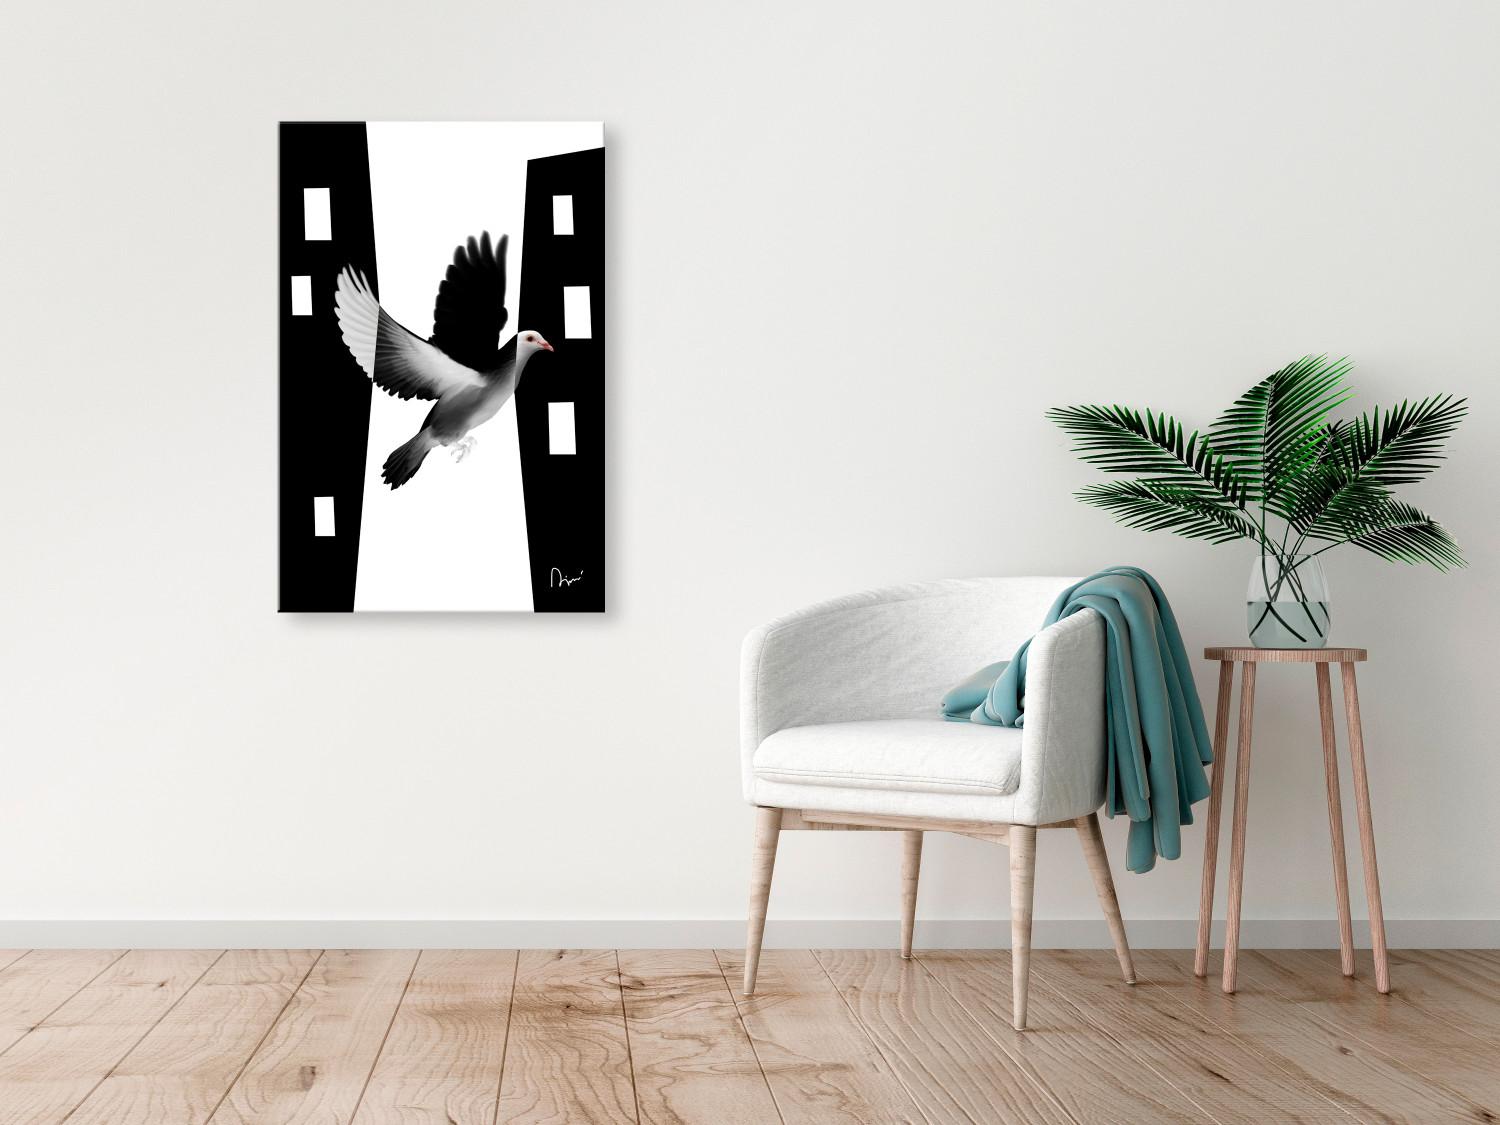 Cuadro decorativo Paloma urbana - ave que se integra en la ciudad en blanco y negro